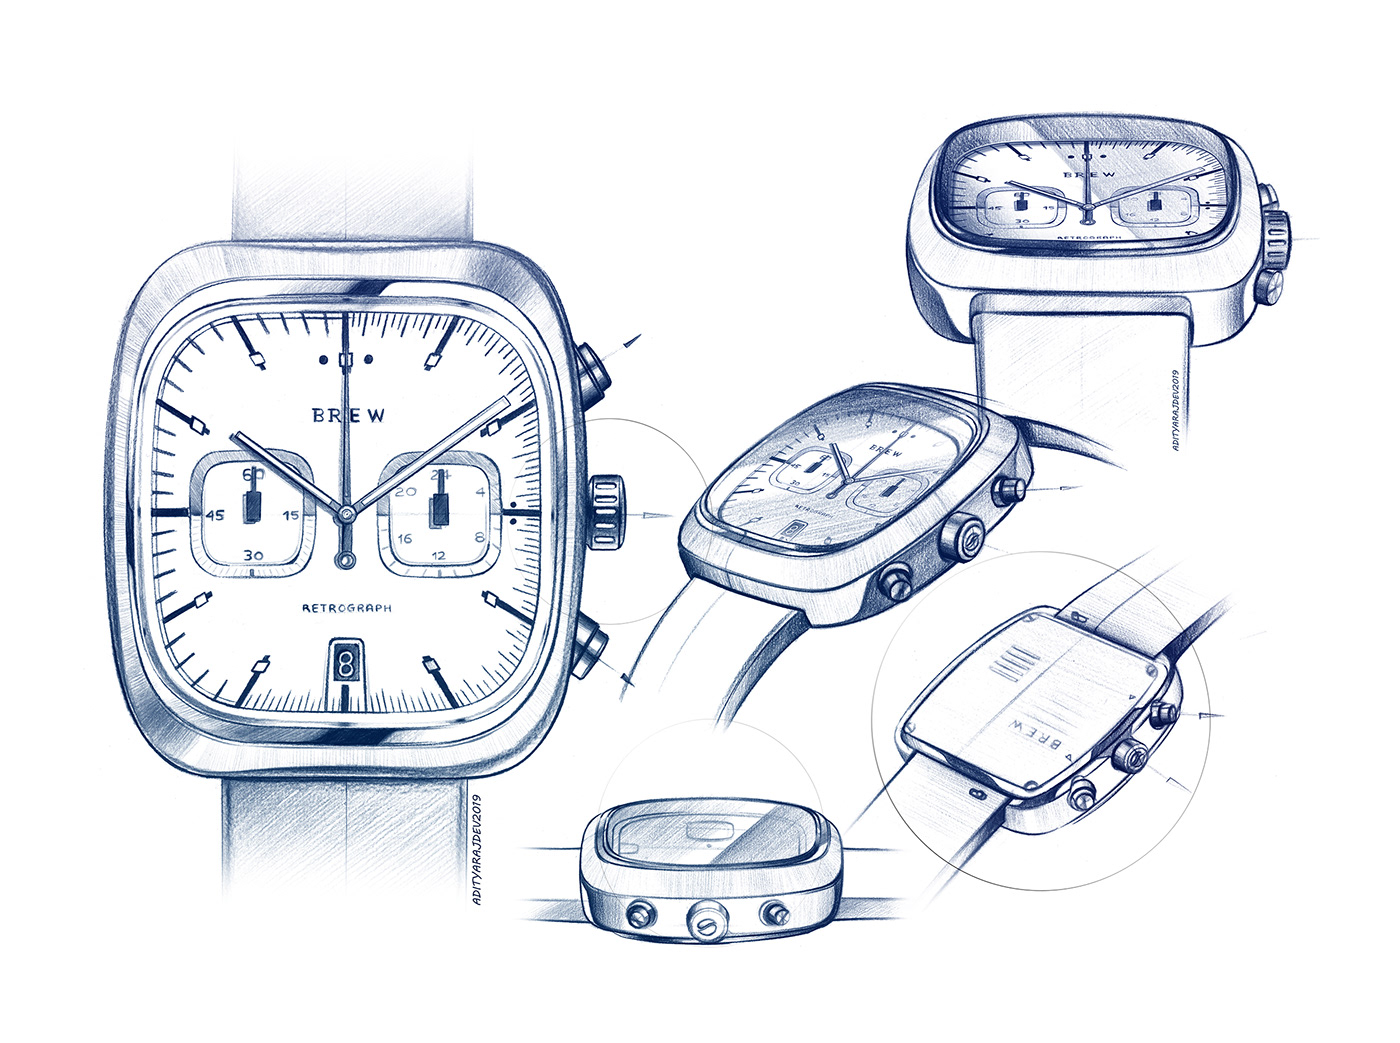 wrist watch wrist watches Watches watch pencil movements sketch sketches WatchDesign